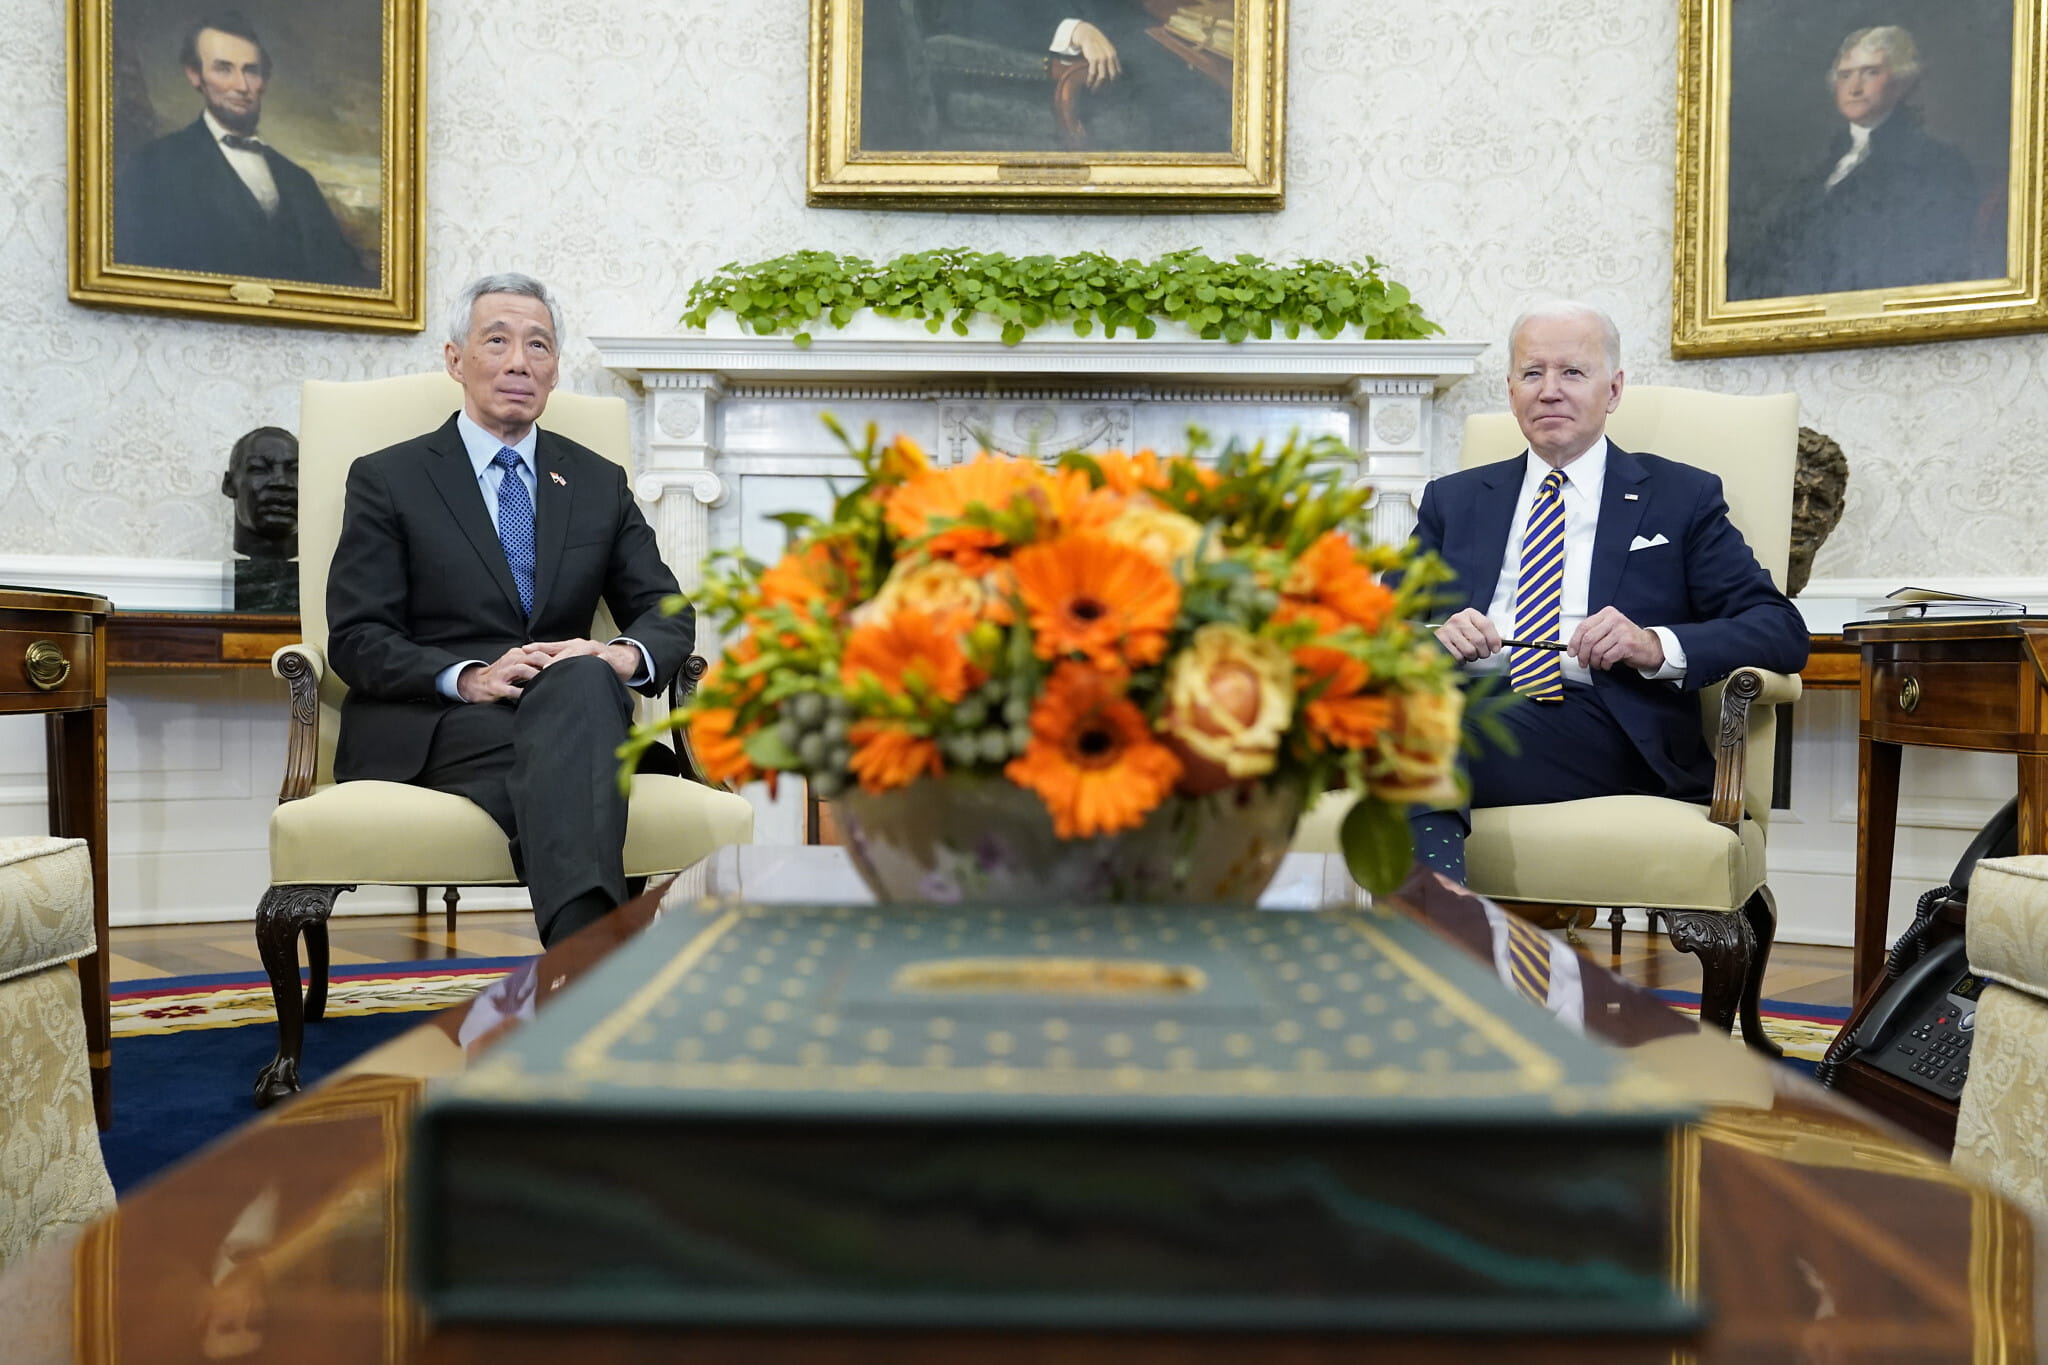 El presidente de los Estados Unidos, Joe Biden, se reúne con el primer ministro de Singapur, Lee Hsien Loong, en el Despacho Oval de la Casa Blanca, el 29 de marzo de 2022, en Washington, DC. (AP Photo/Patrick Semansky)